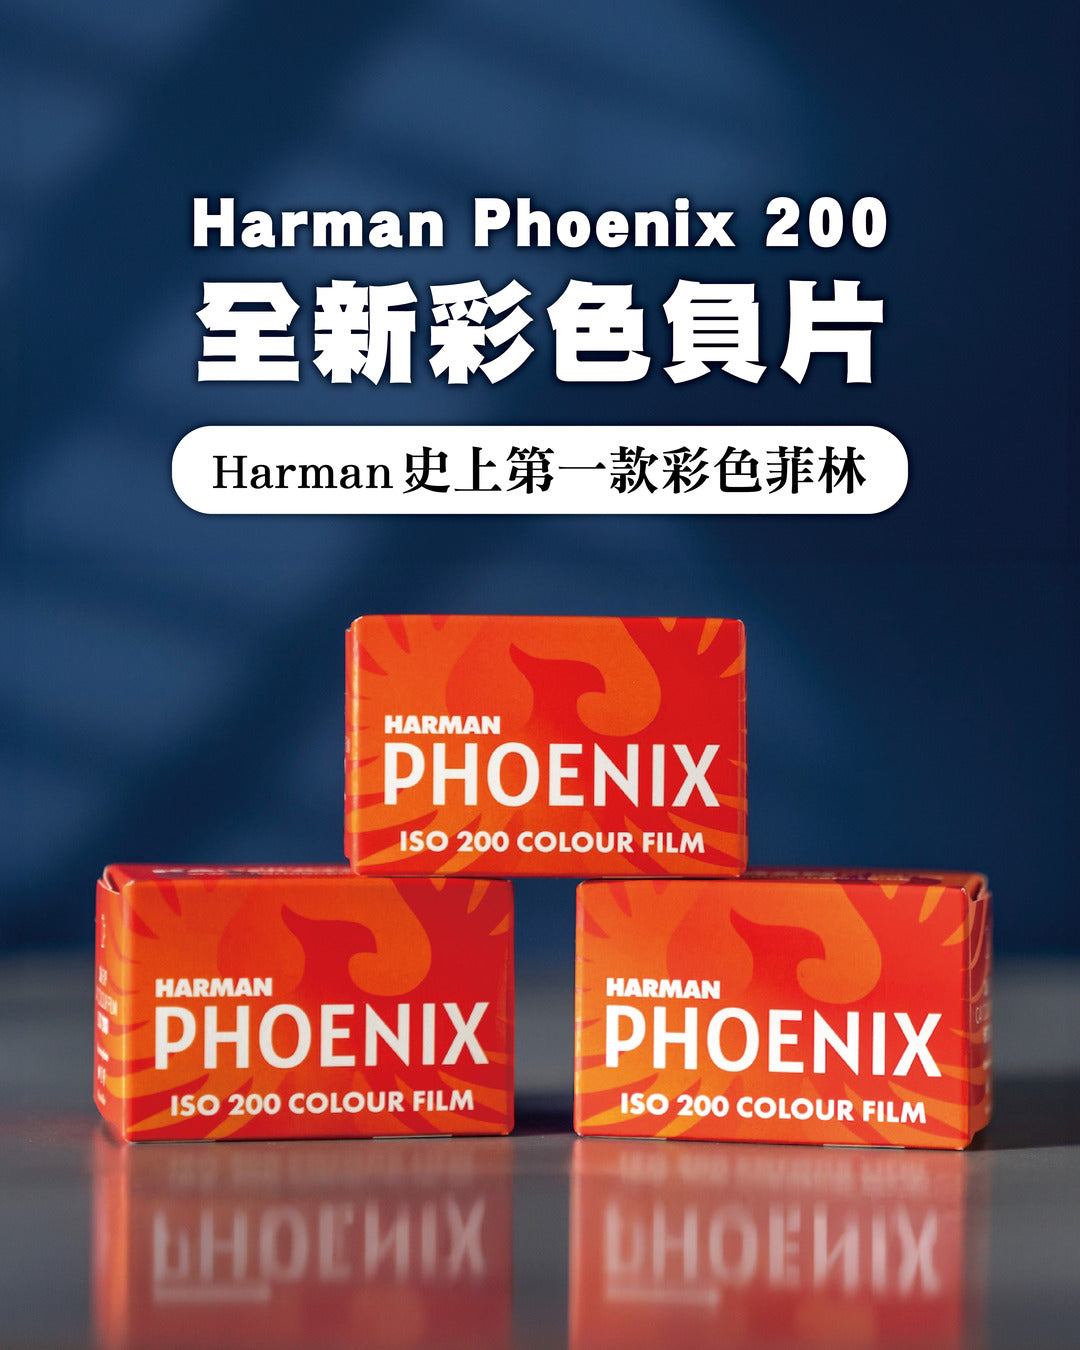 【新品前瞻】ILFORD母公司 百年歷史Harman史上第一款彩色負片！全新推出Phoenix 200